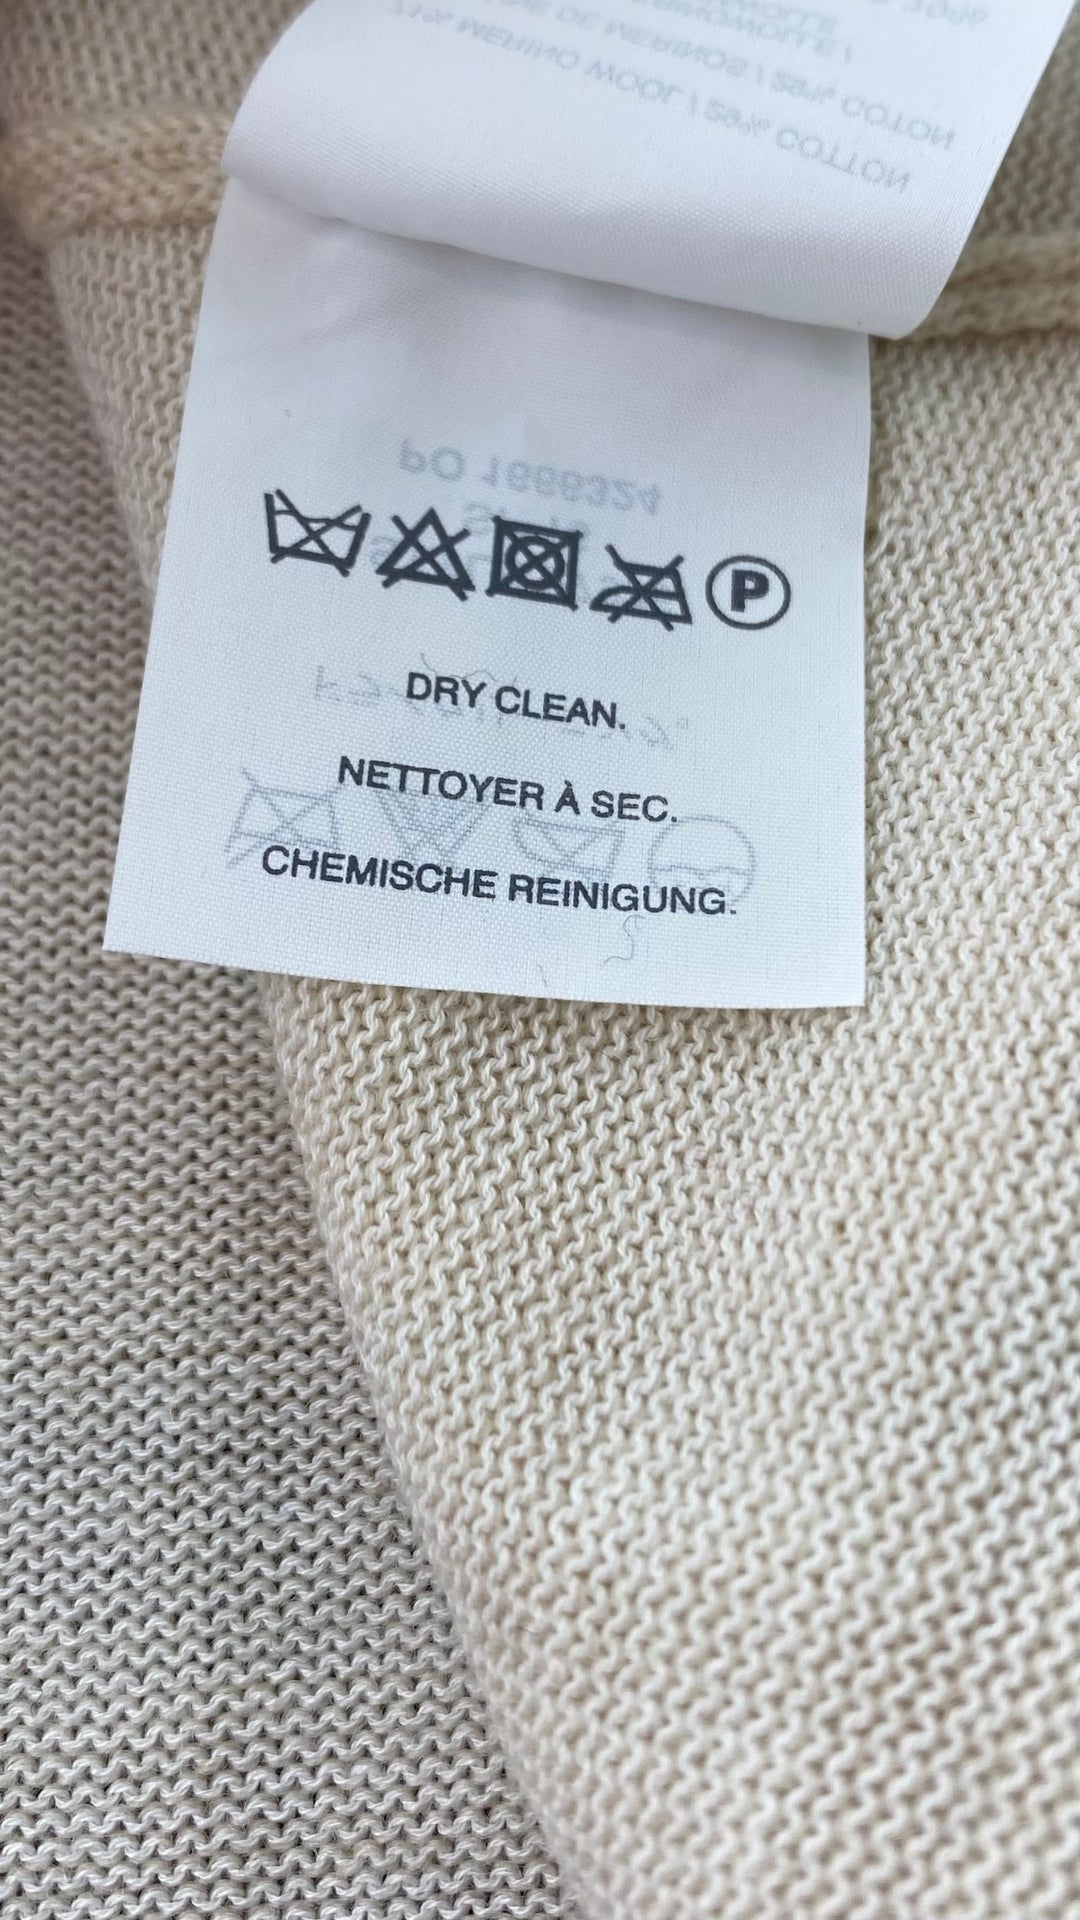 Chandail tricot avoine mélange de laine mérinos et coton, marque J.Crew, taille small. Vue de l'étiquette d'entretien.